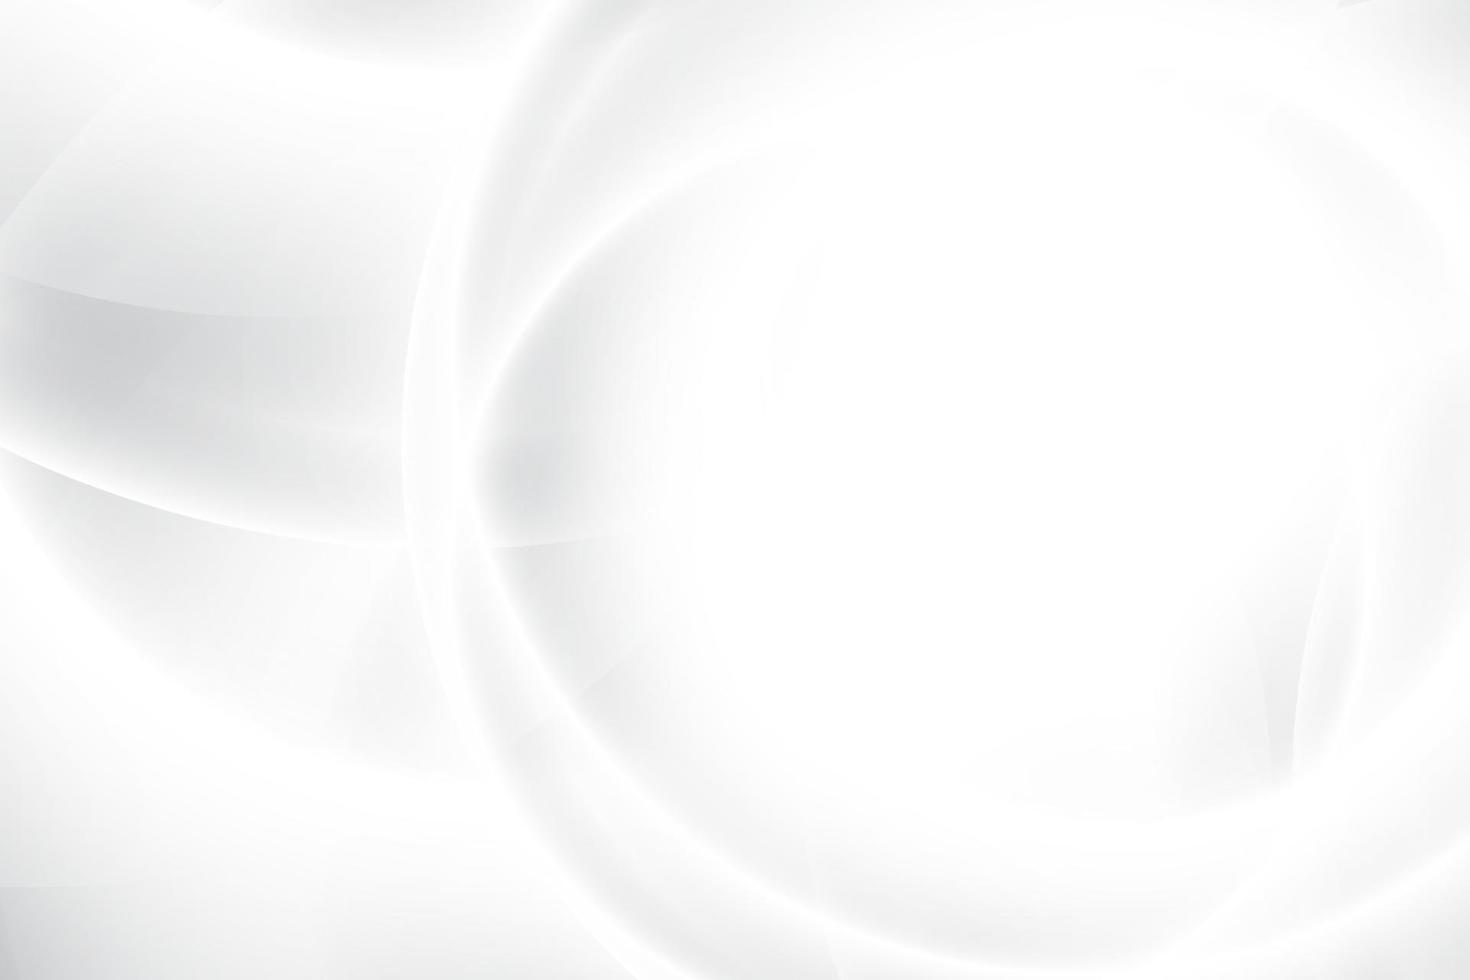 couleur blanche et grise abstraite, arrière-plan design moderne avec une forme ronde géométrique. illustration vectorielle. vecteur